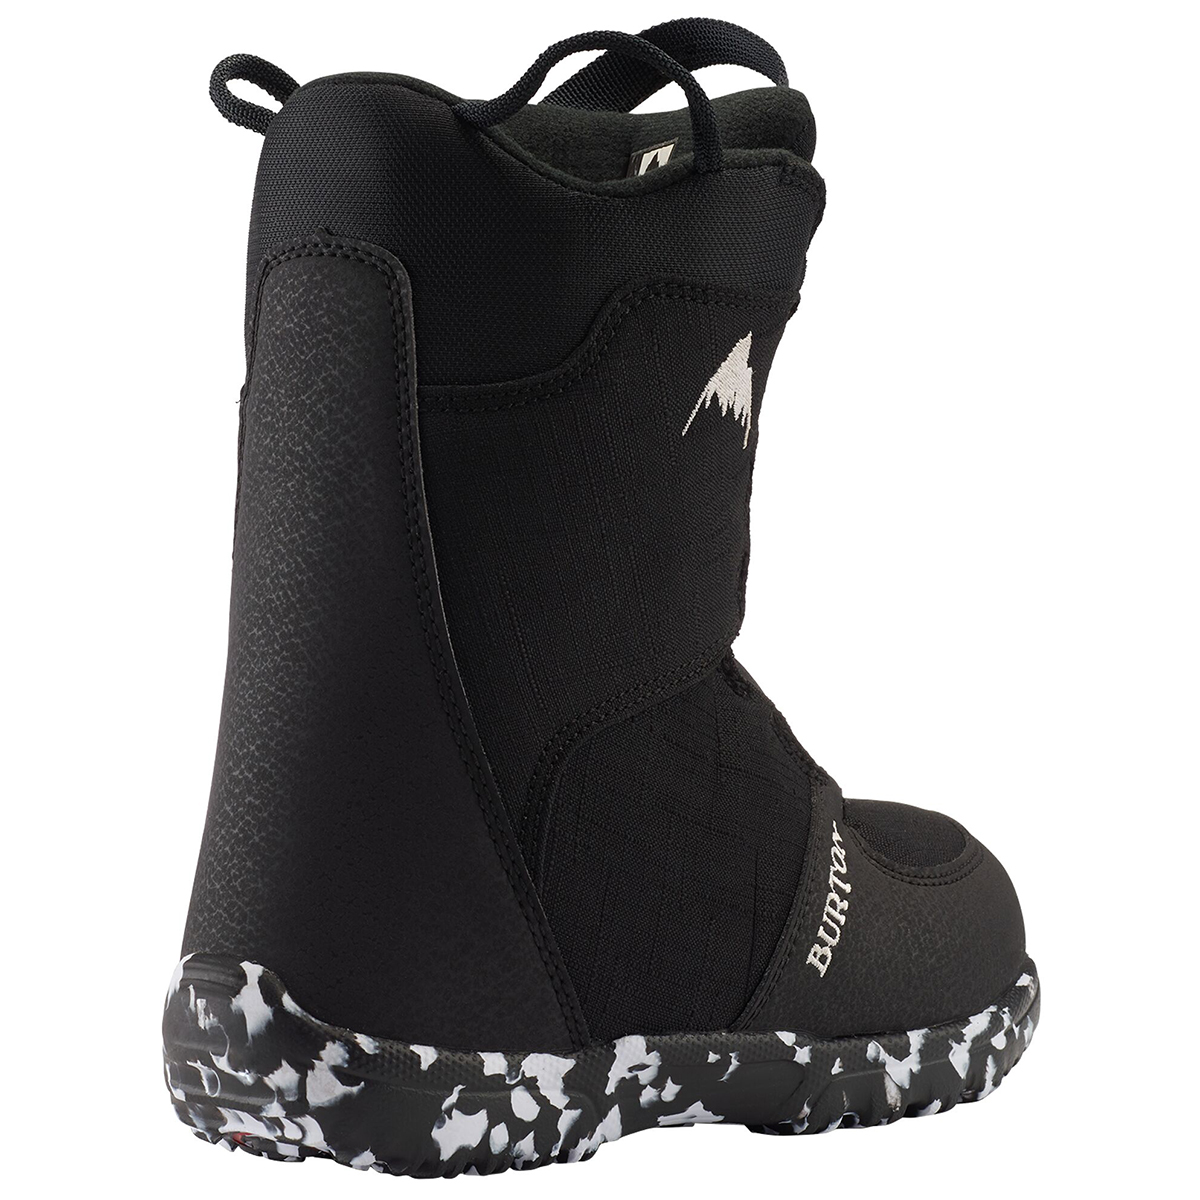 Ботинки для сноуборда Burton Grom BOA купить в Boardshop №1